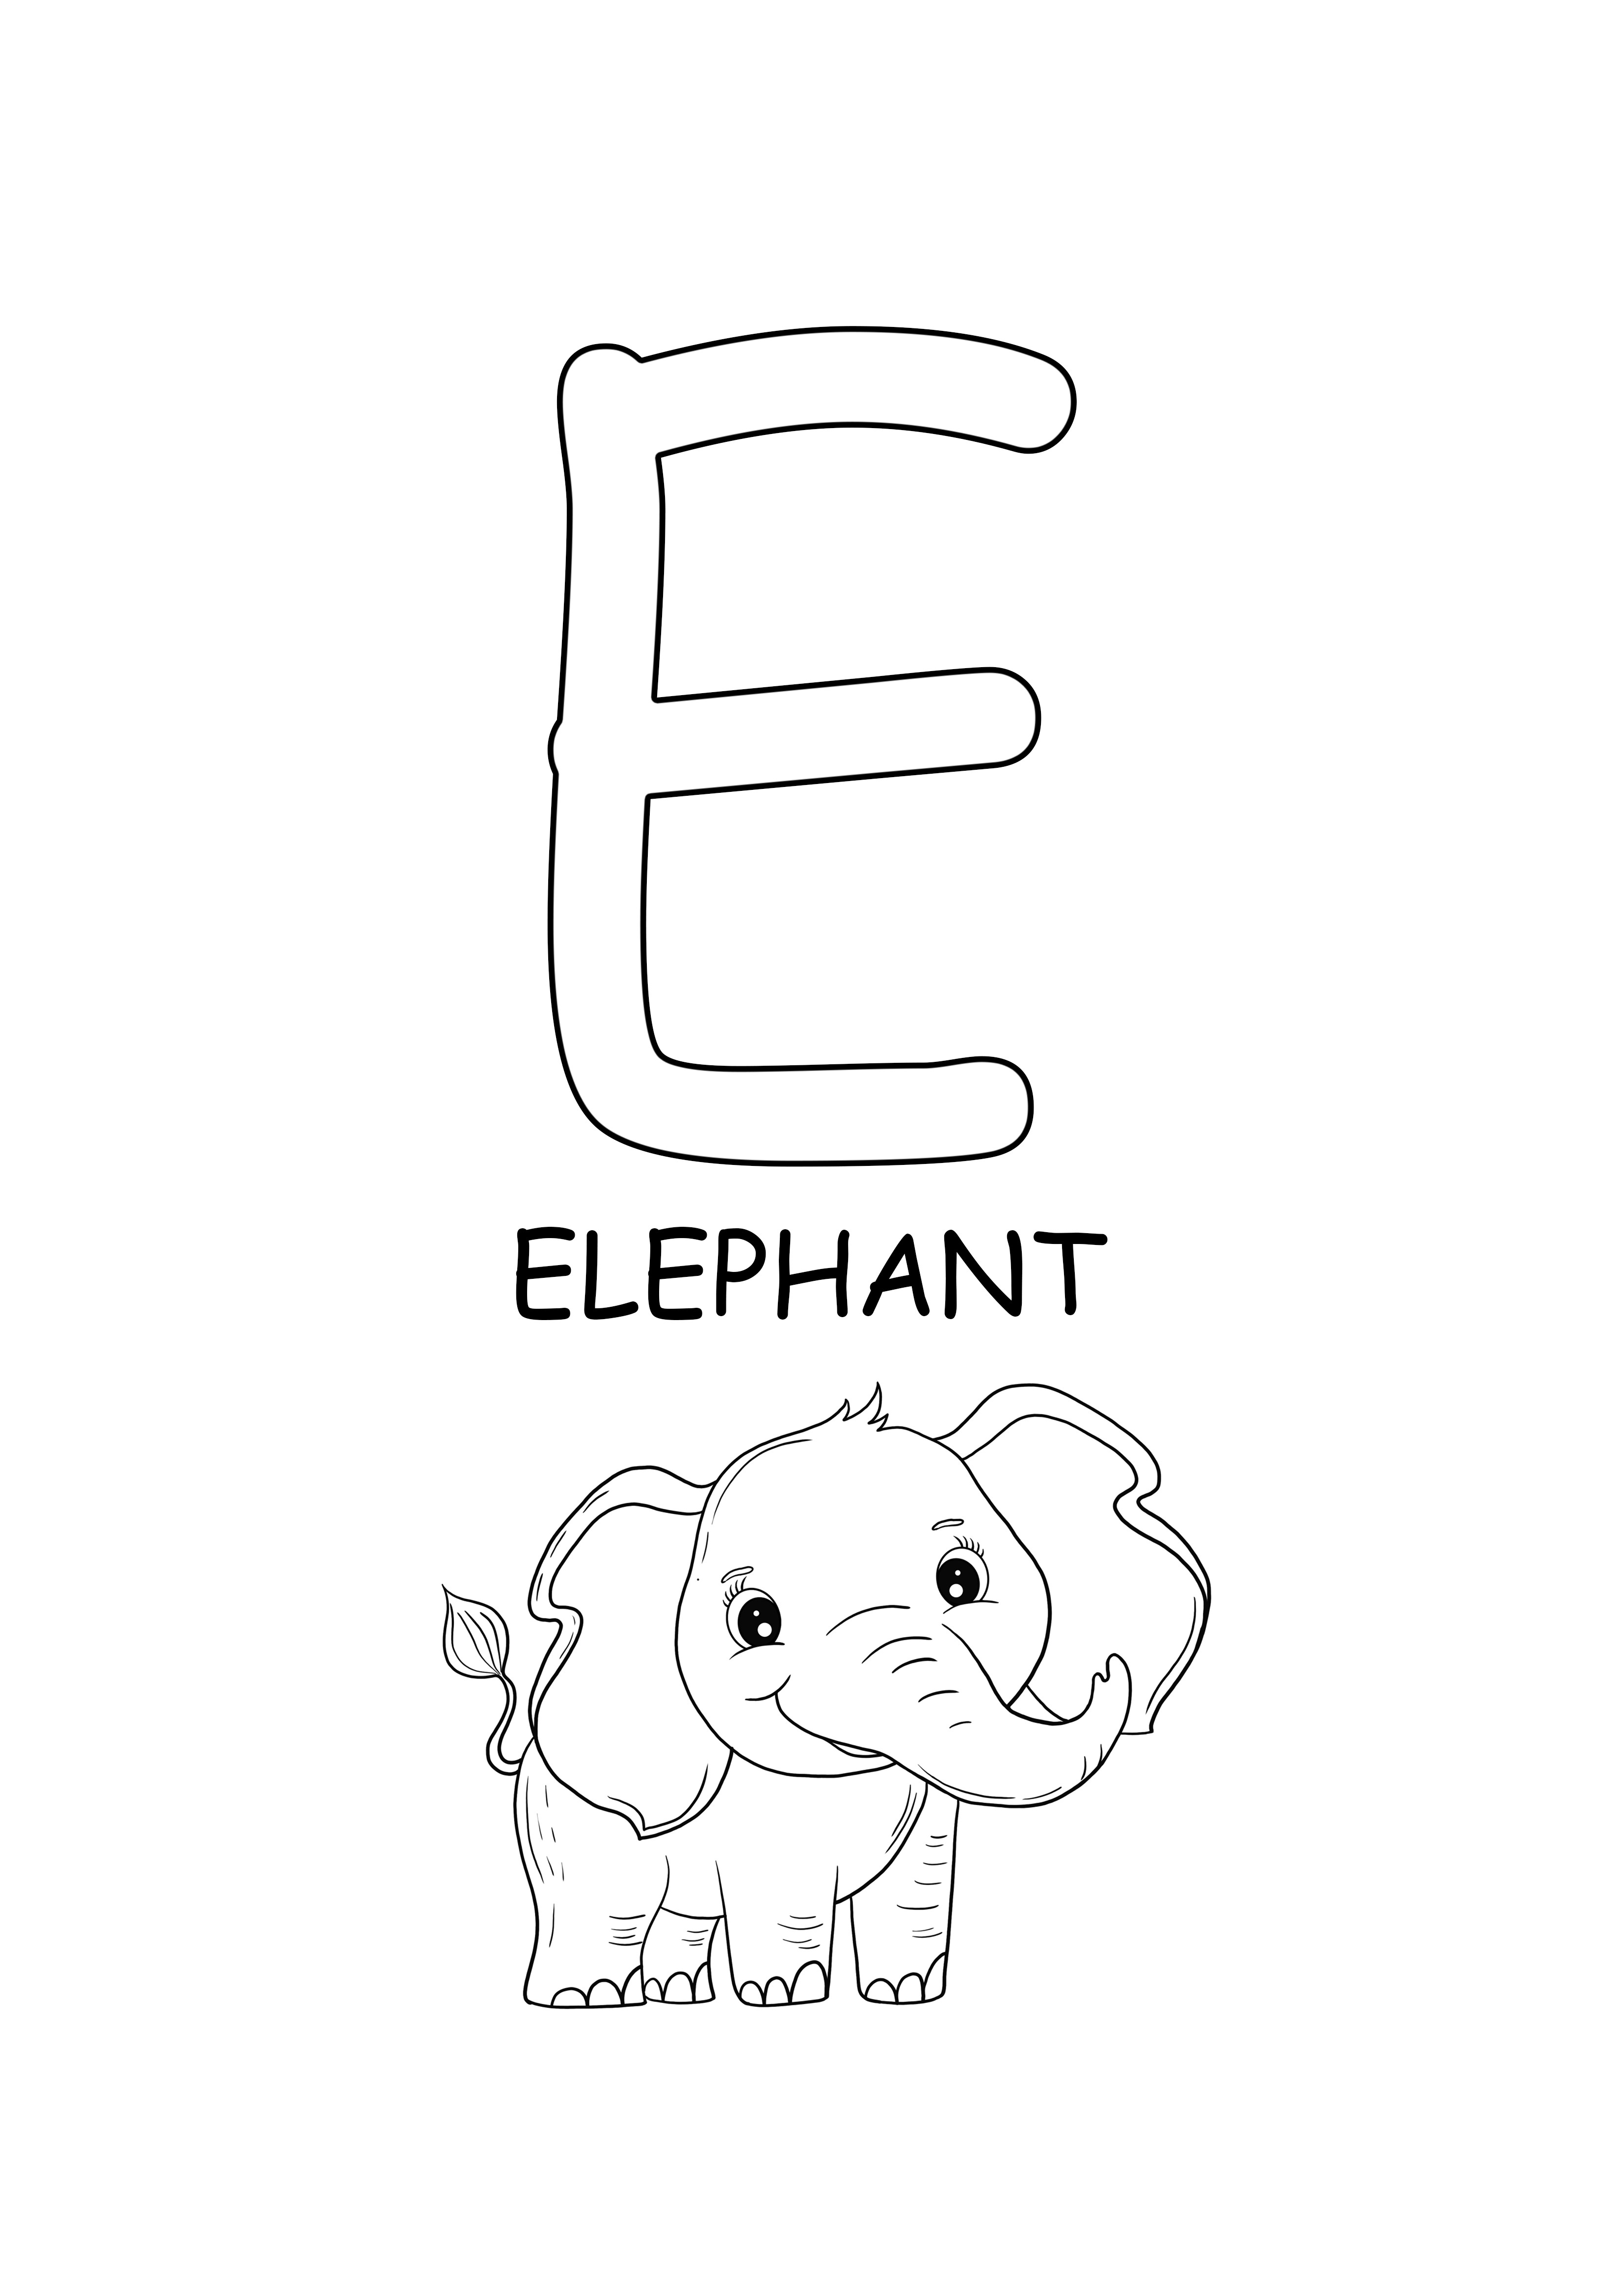 Elefante de palabras en mayúsculas para colorear e imprimir gratis.